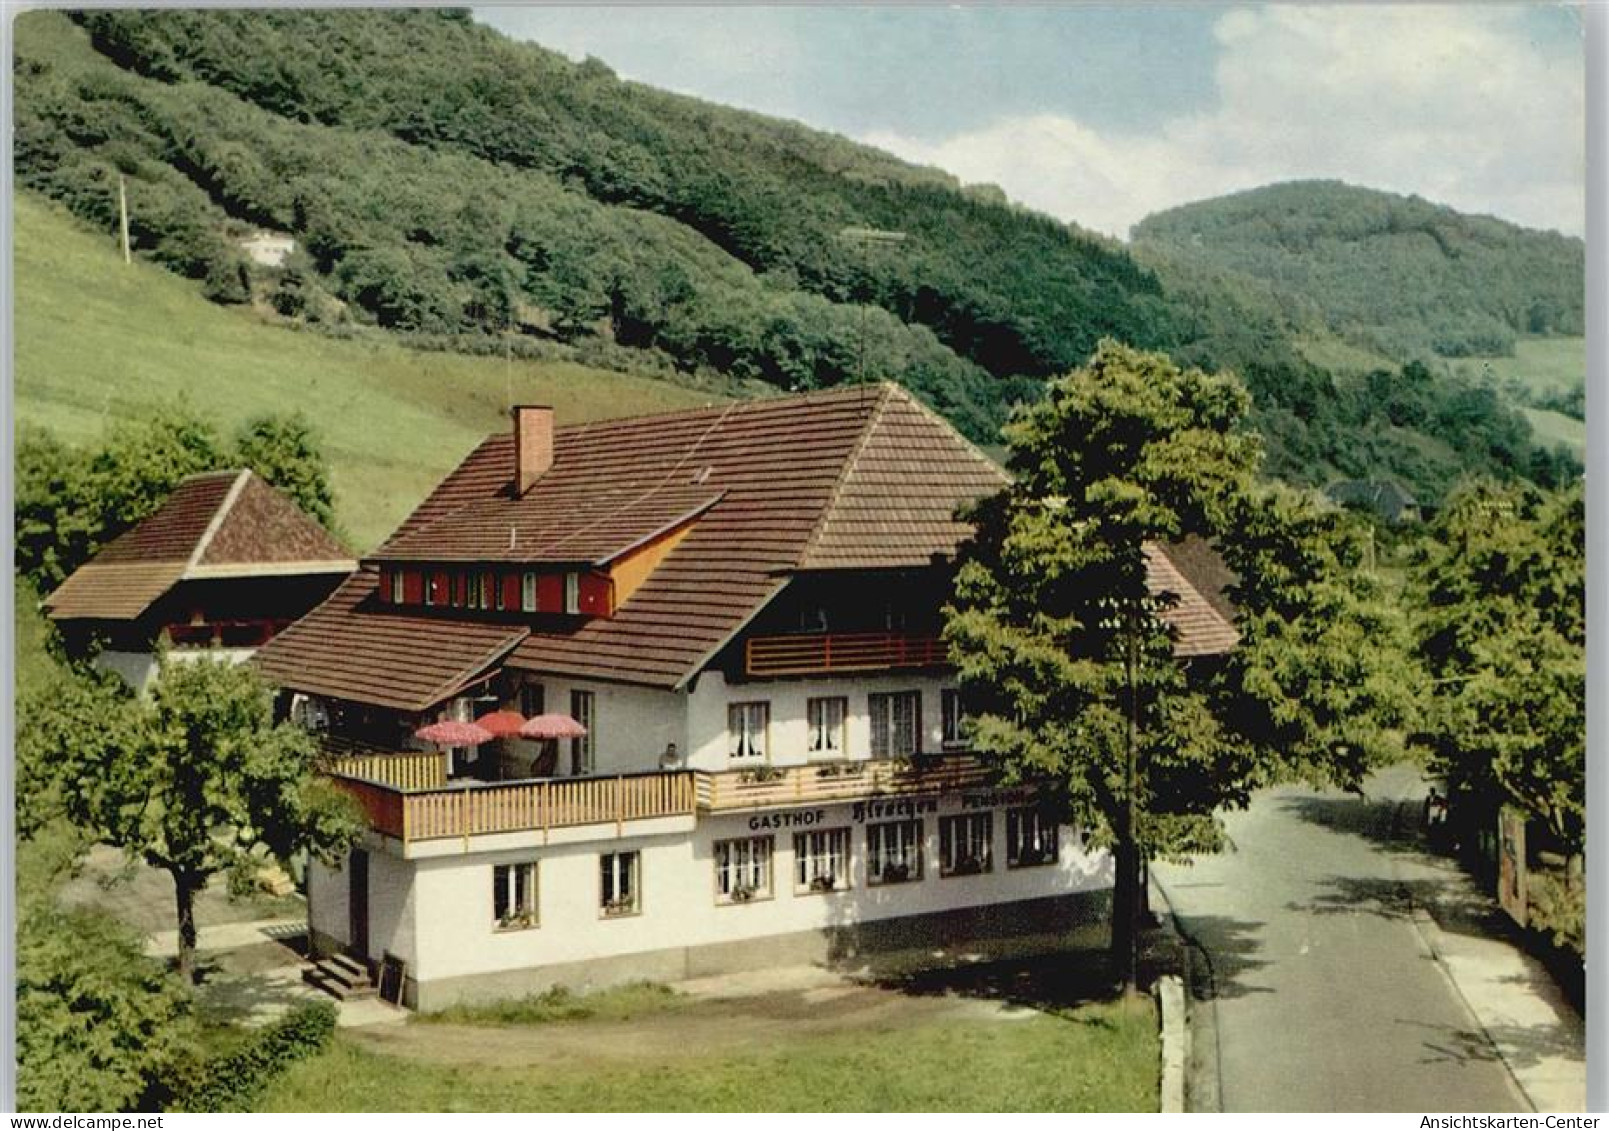 10052107 - Oberprechtal - Elzach